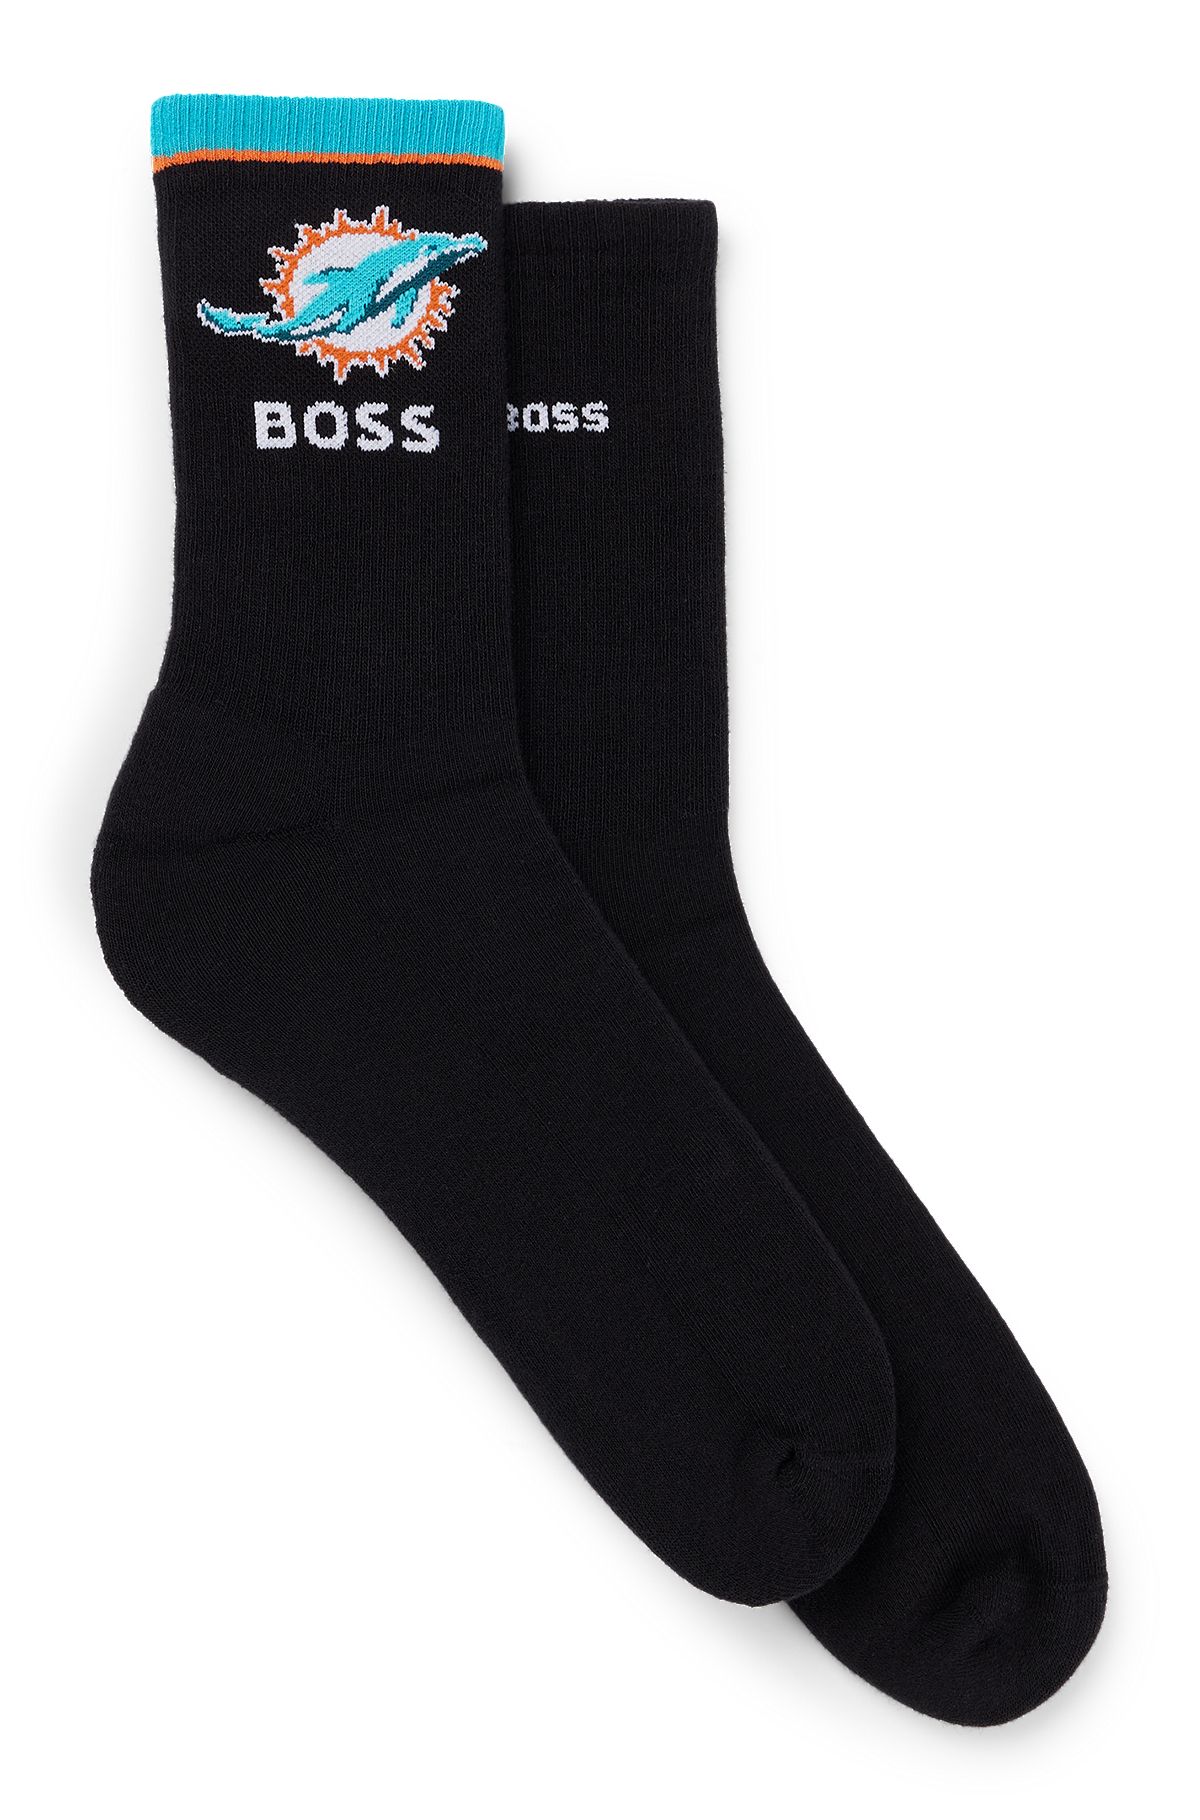 BOSS x NFL two-pack of cotton short socks, Black